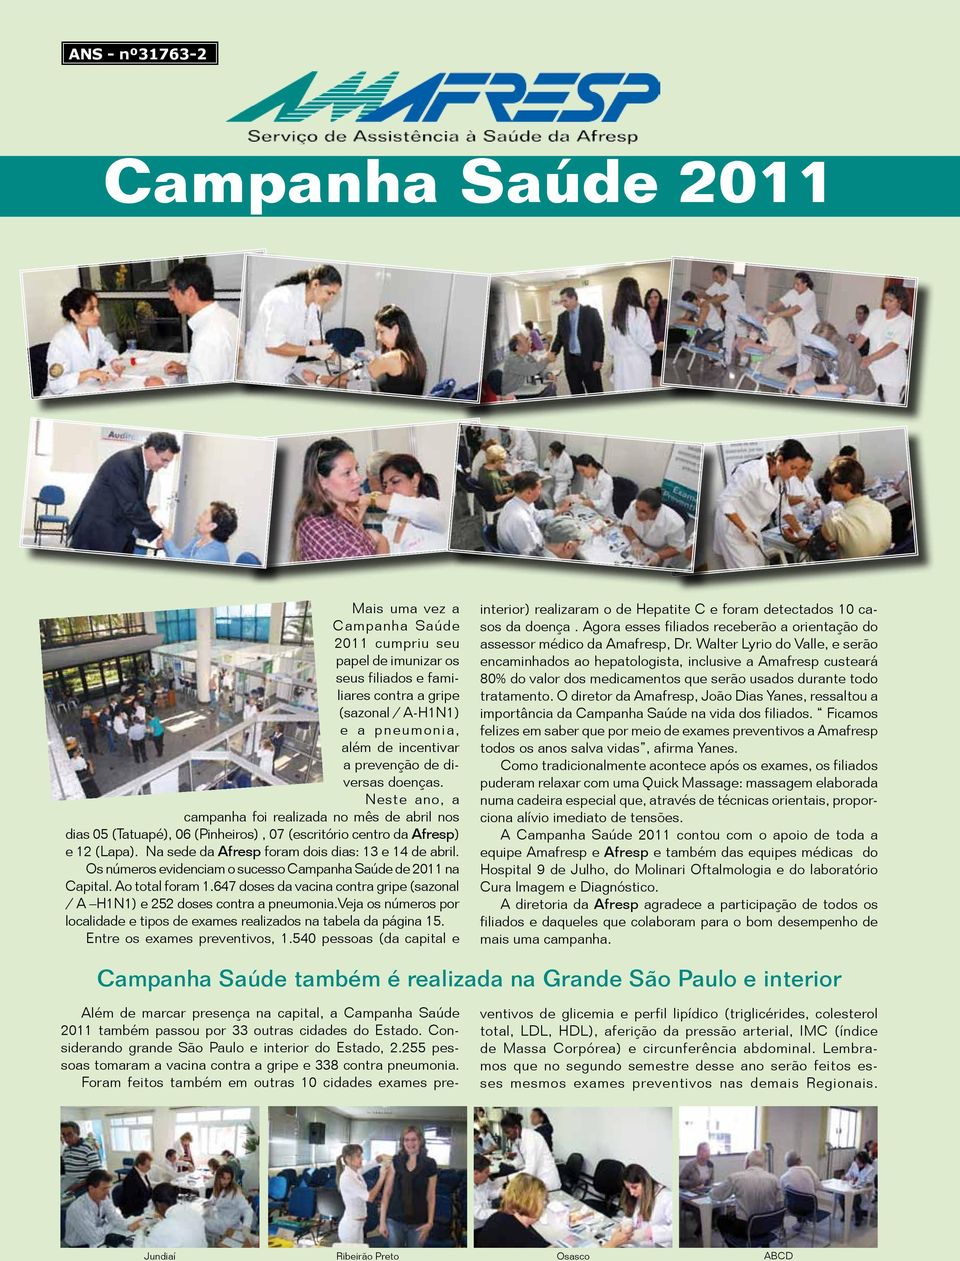 Na sede da Afresp foram dois dias: 13 e 14 de abril. Os números evidenciam o sucesso Campanha Saúde de 2011 na Capital. Ao total foram 1.